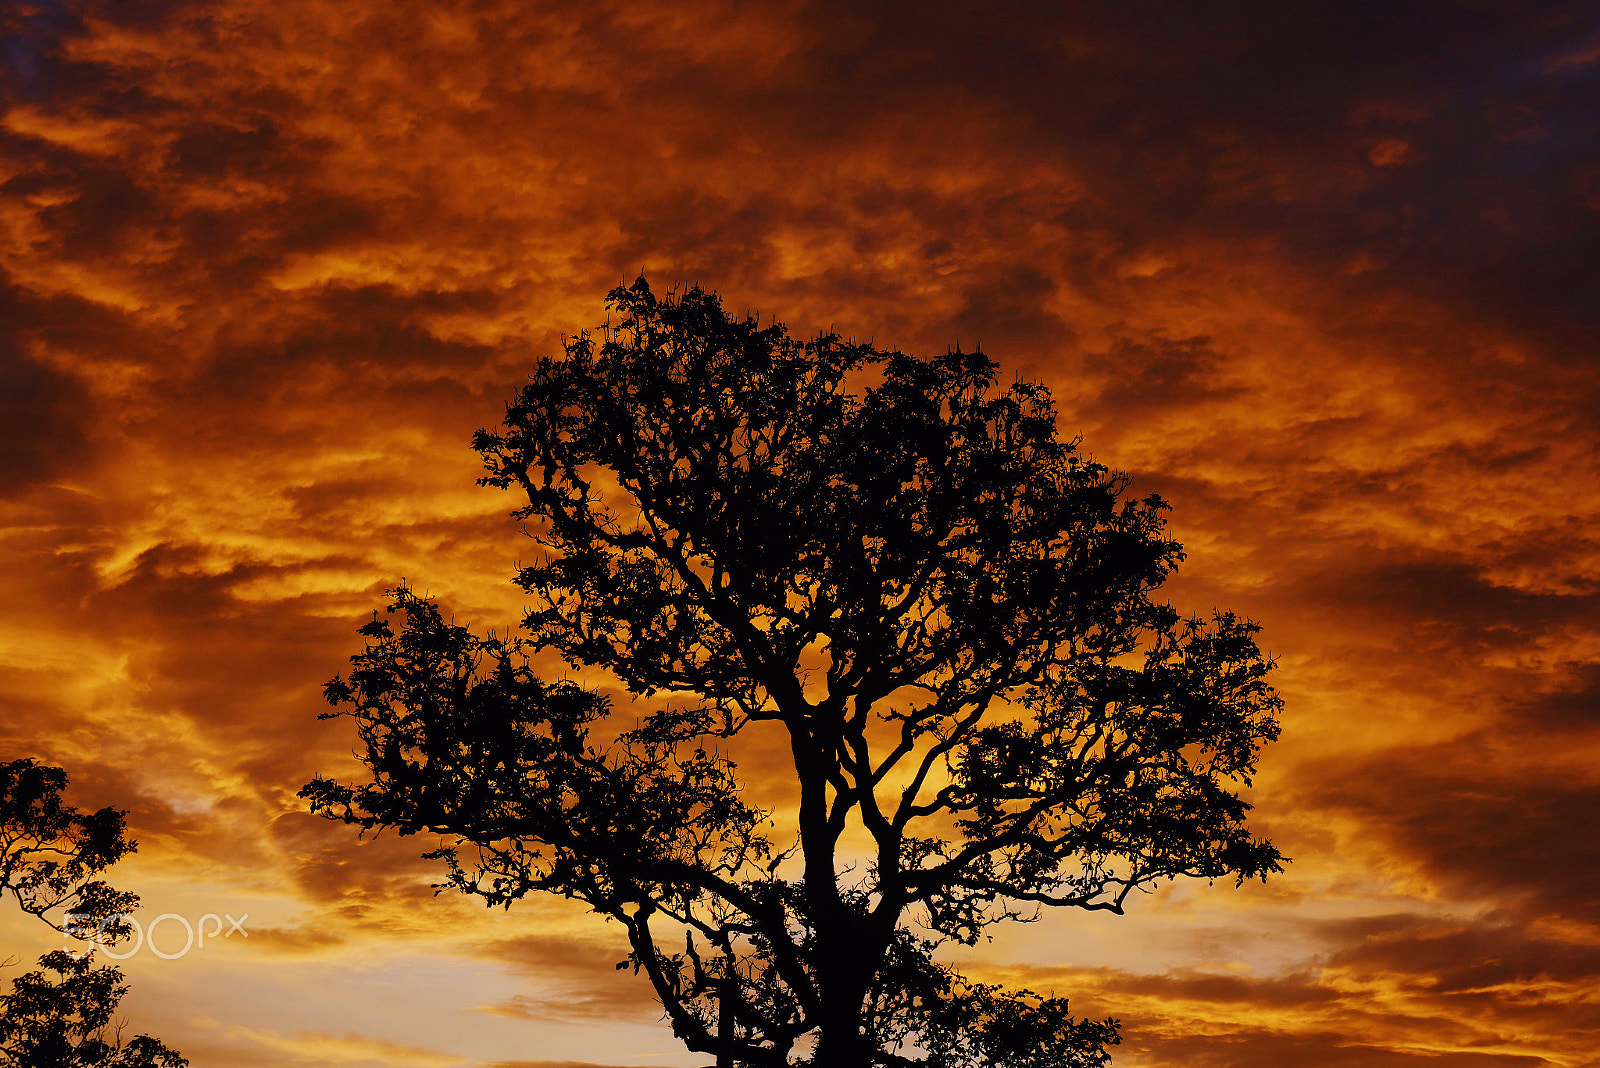 Panasonic Lumix DMC-GX8 sample photo. Beautiful sunset and a tree photography